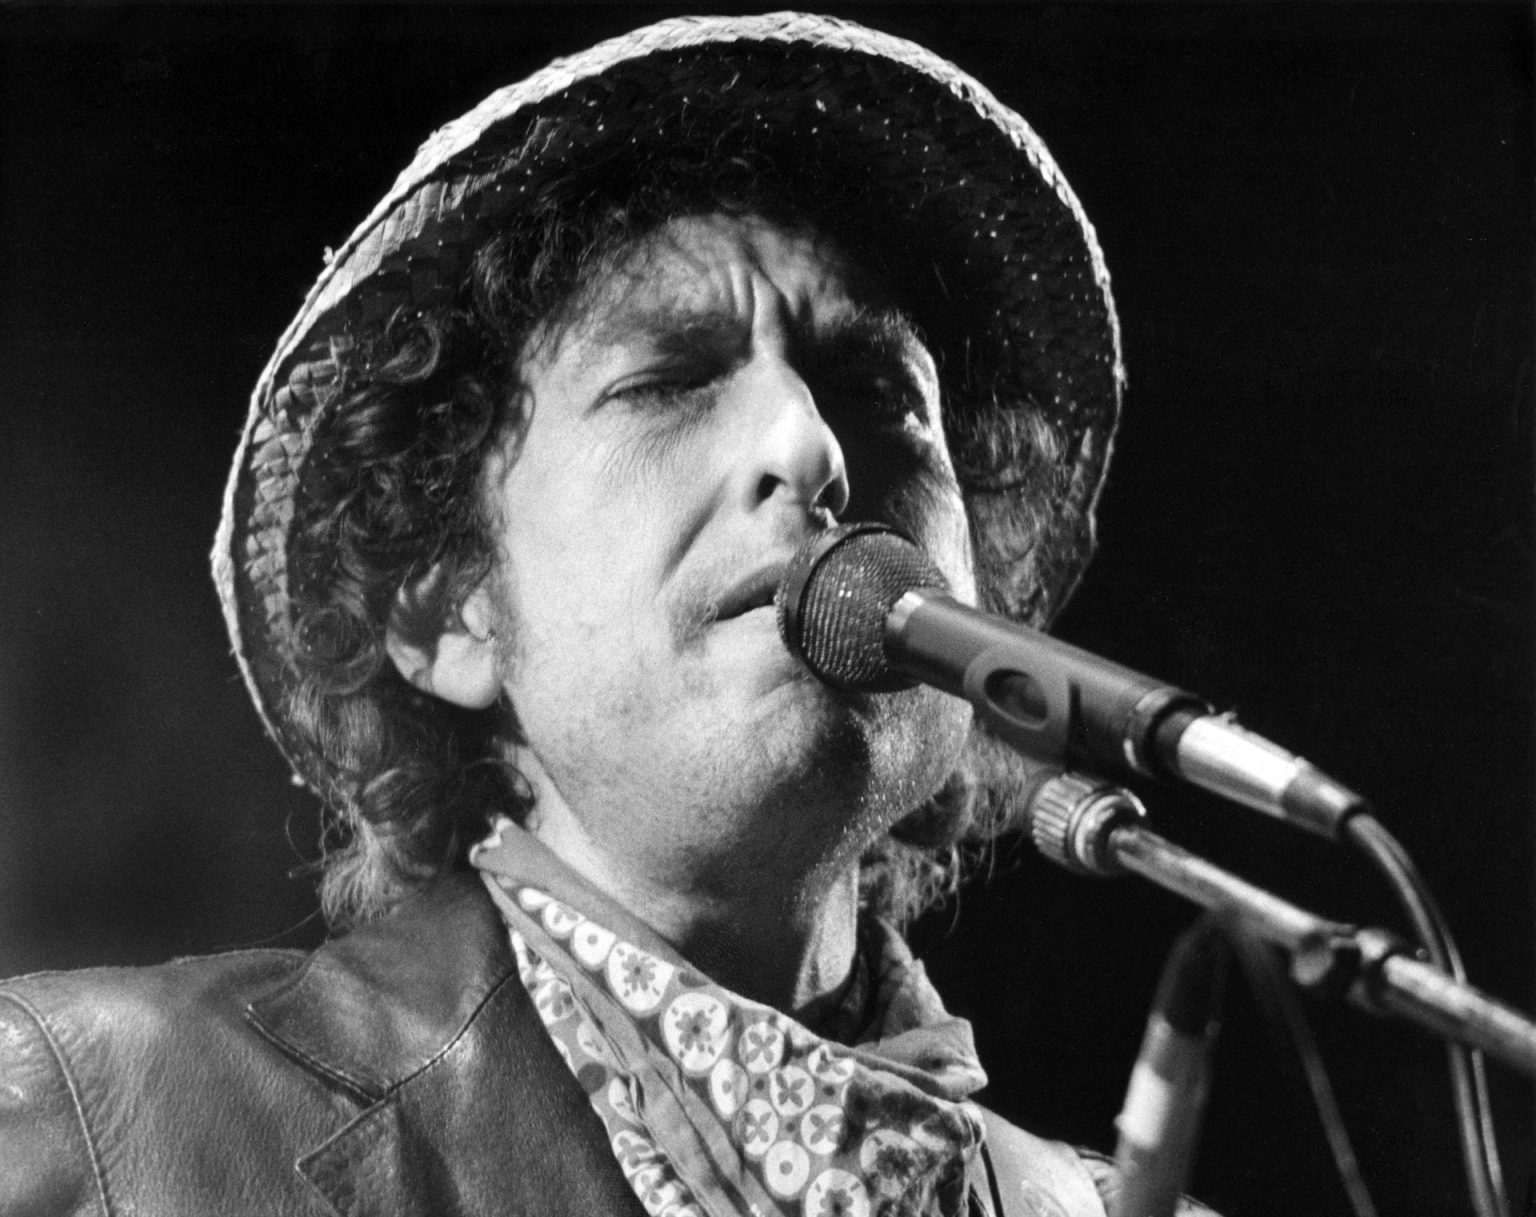 Fotografía de archivo fechada el 3 de junio de 1984 que muestra al cantautor estadounidense Bod Dylan. EFE/Istvan Bajzat